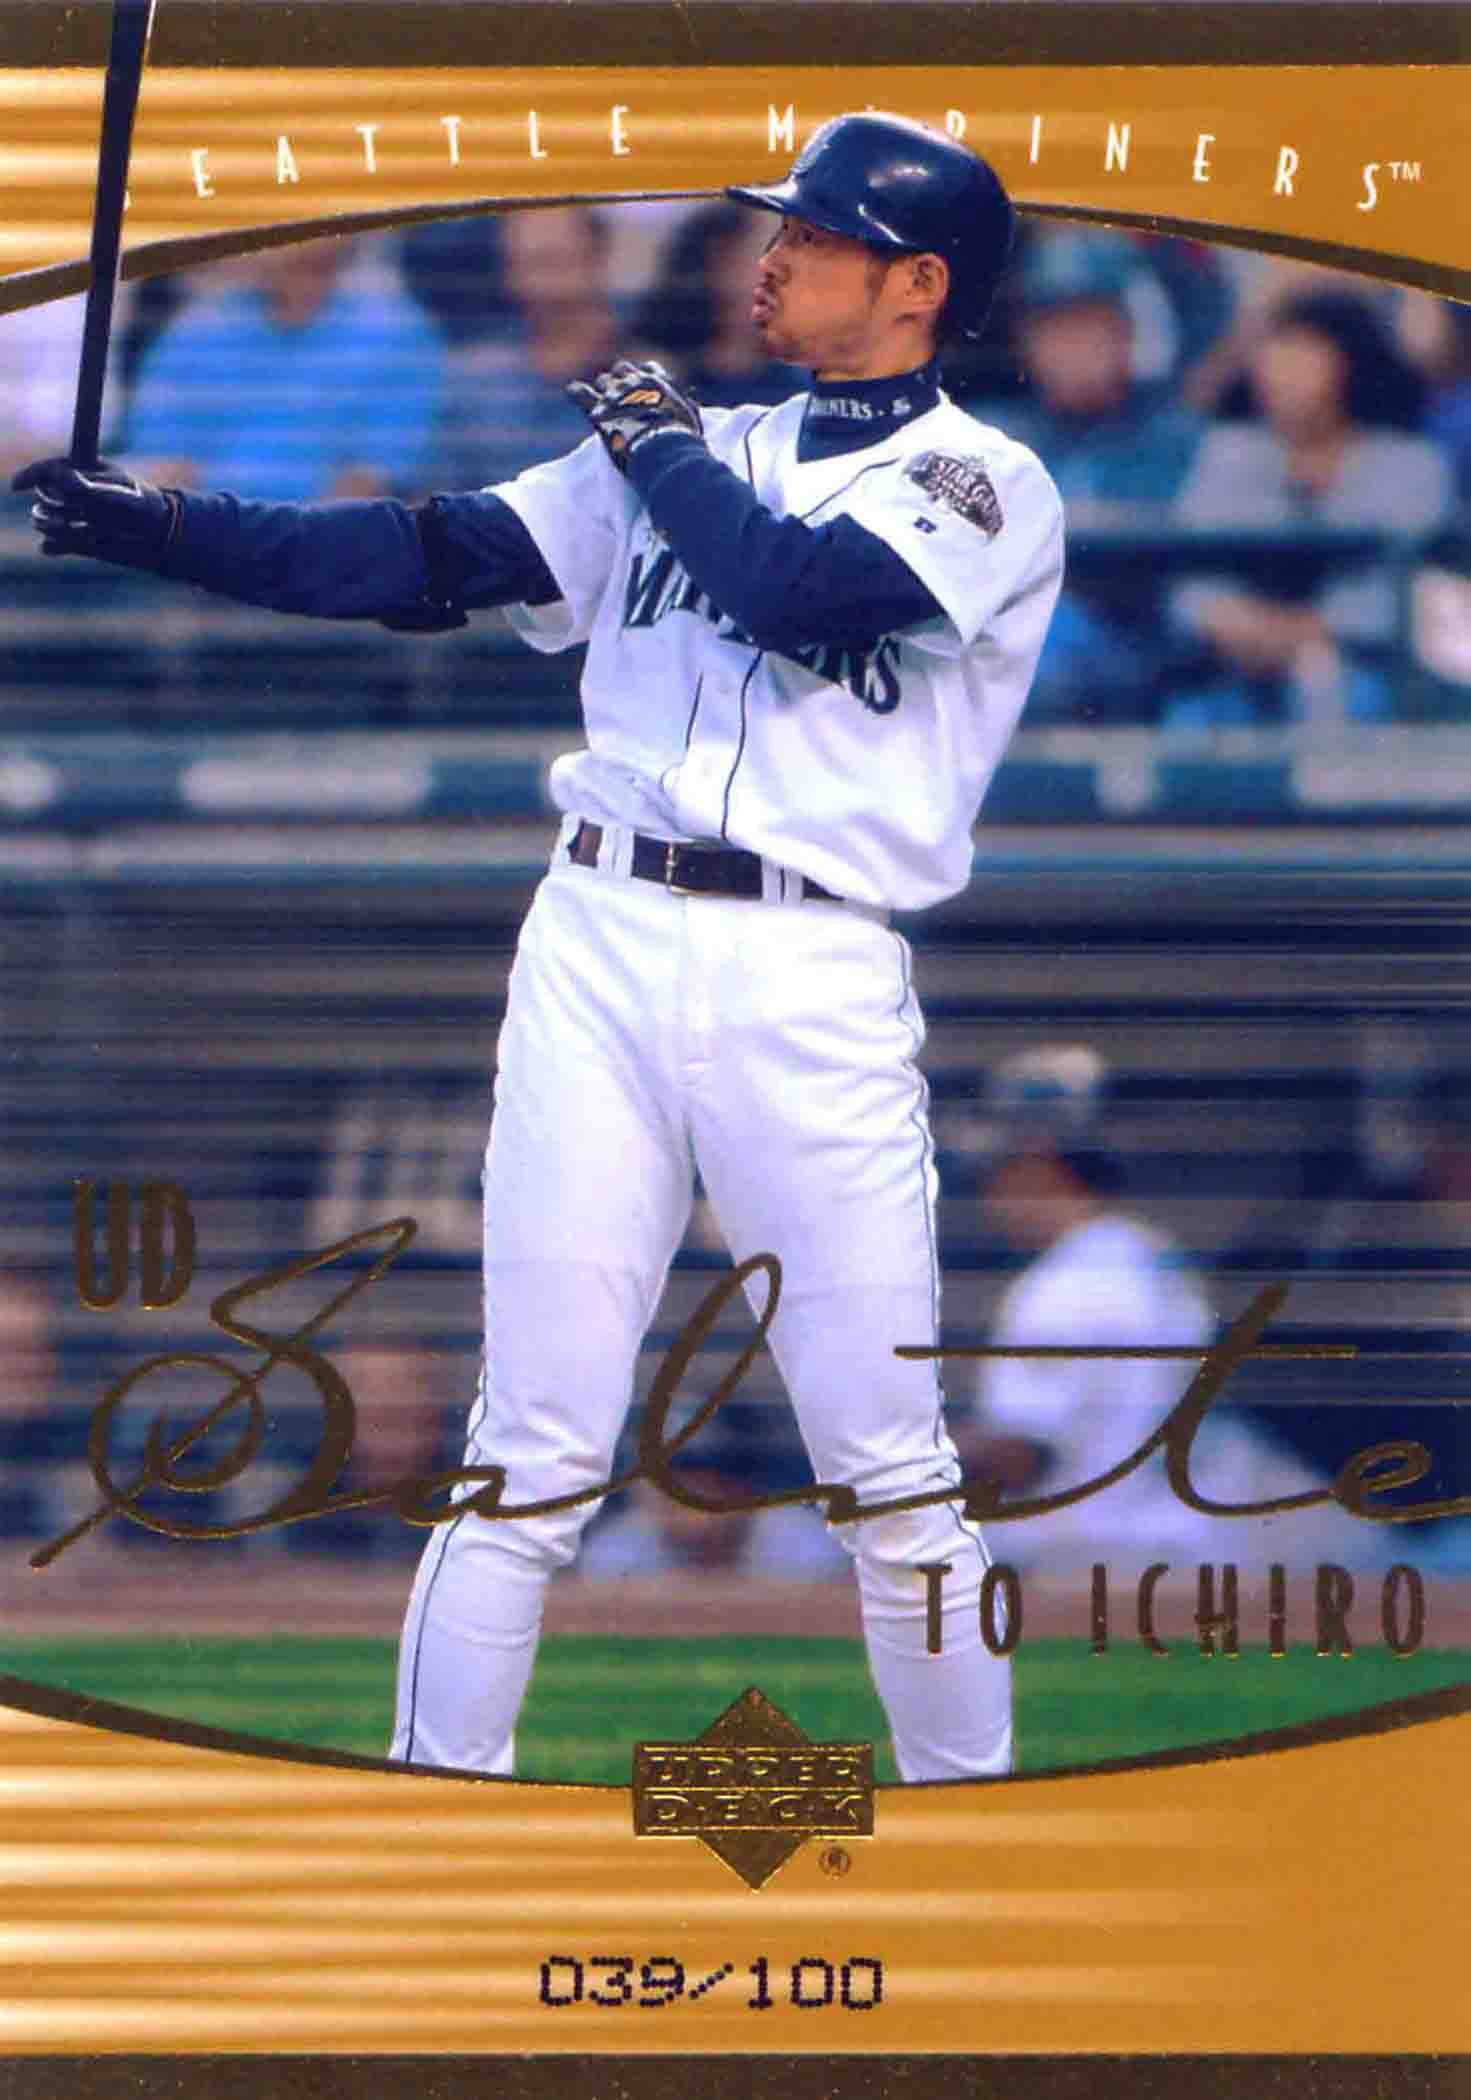 2001 Upper Deck Rookie Update Ichiro Tribute Gold Salute